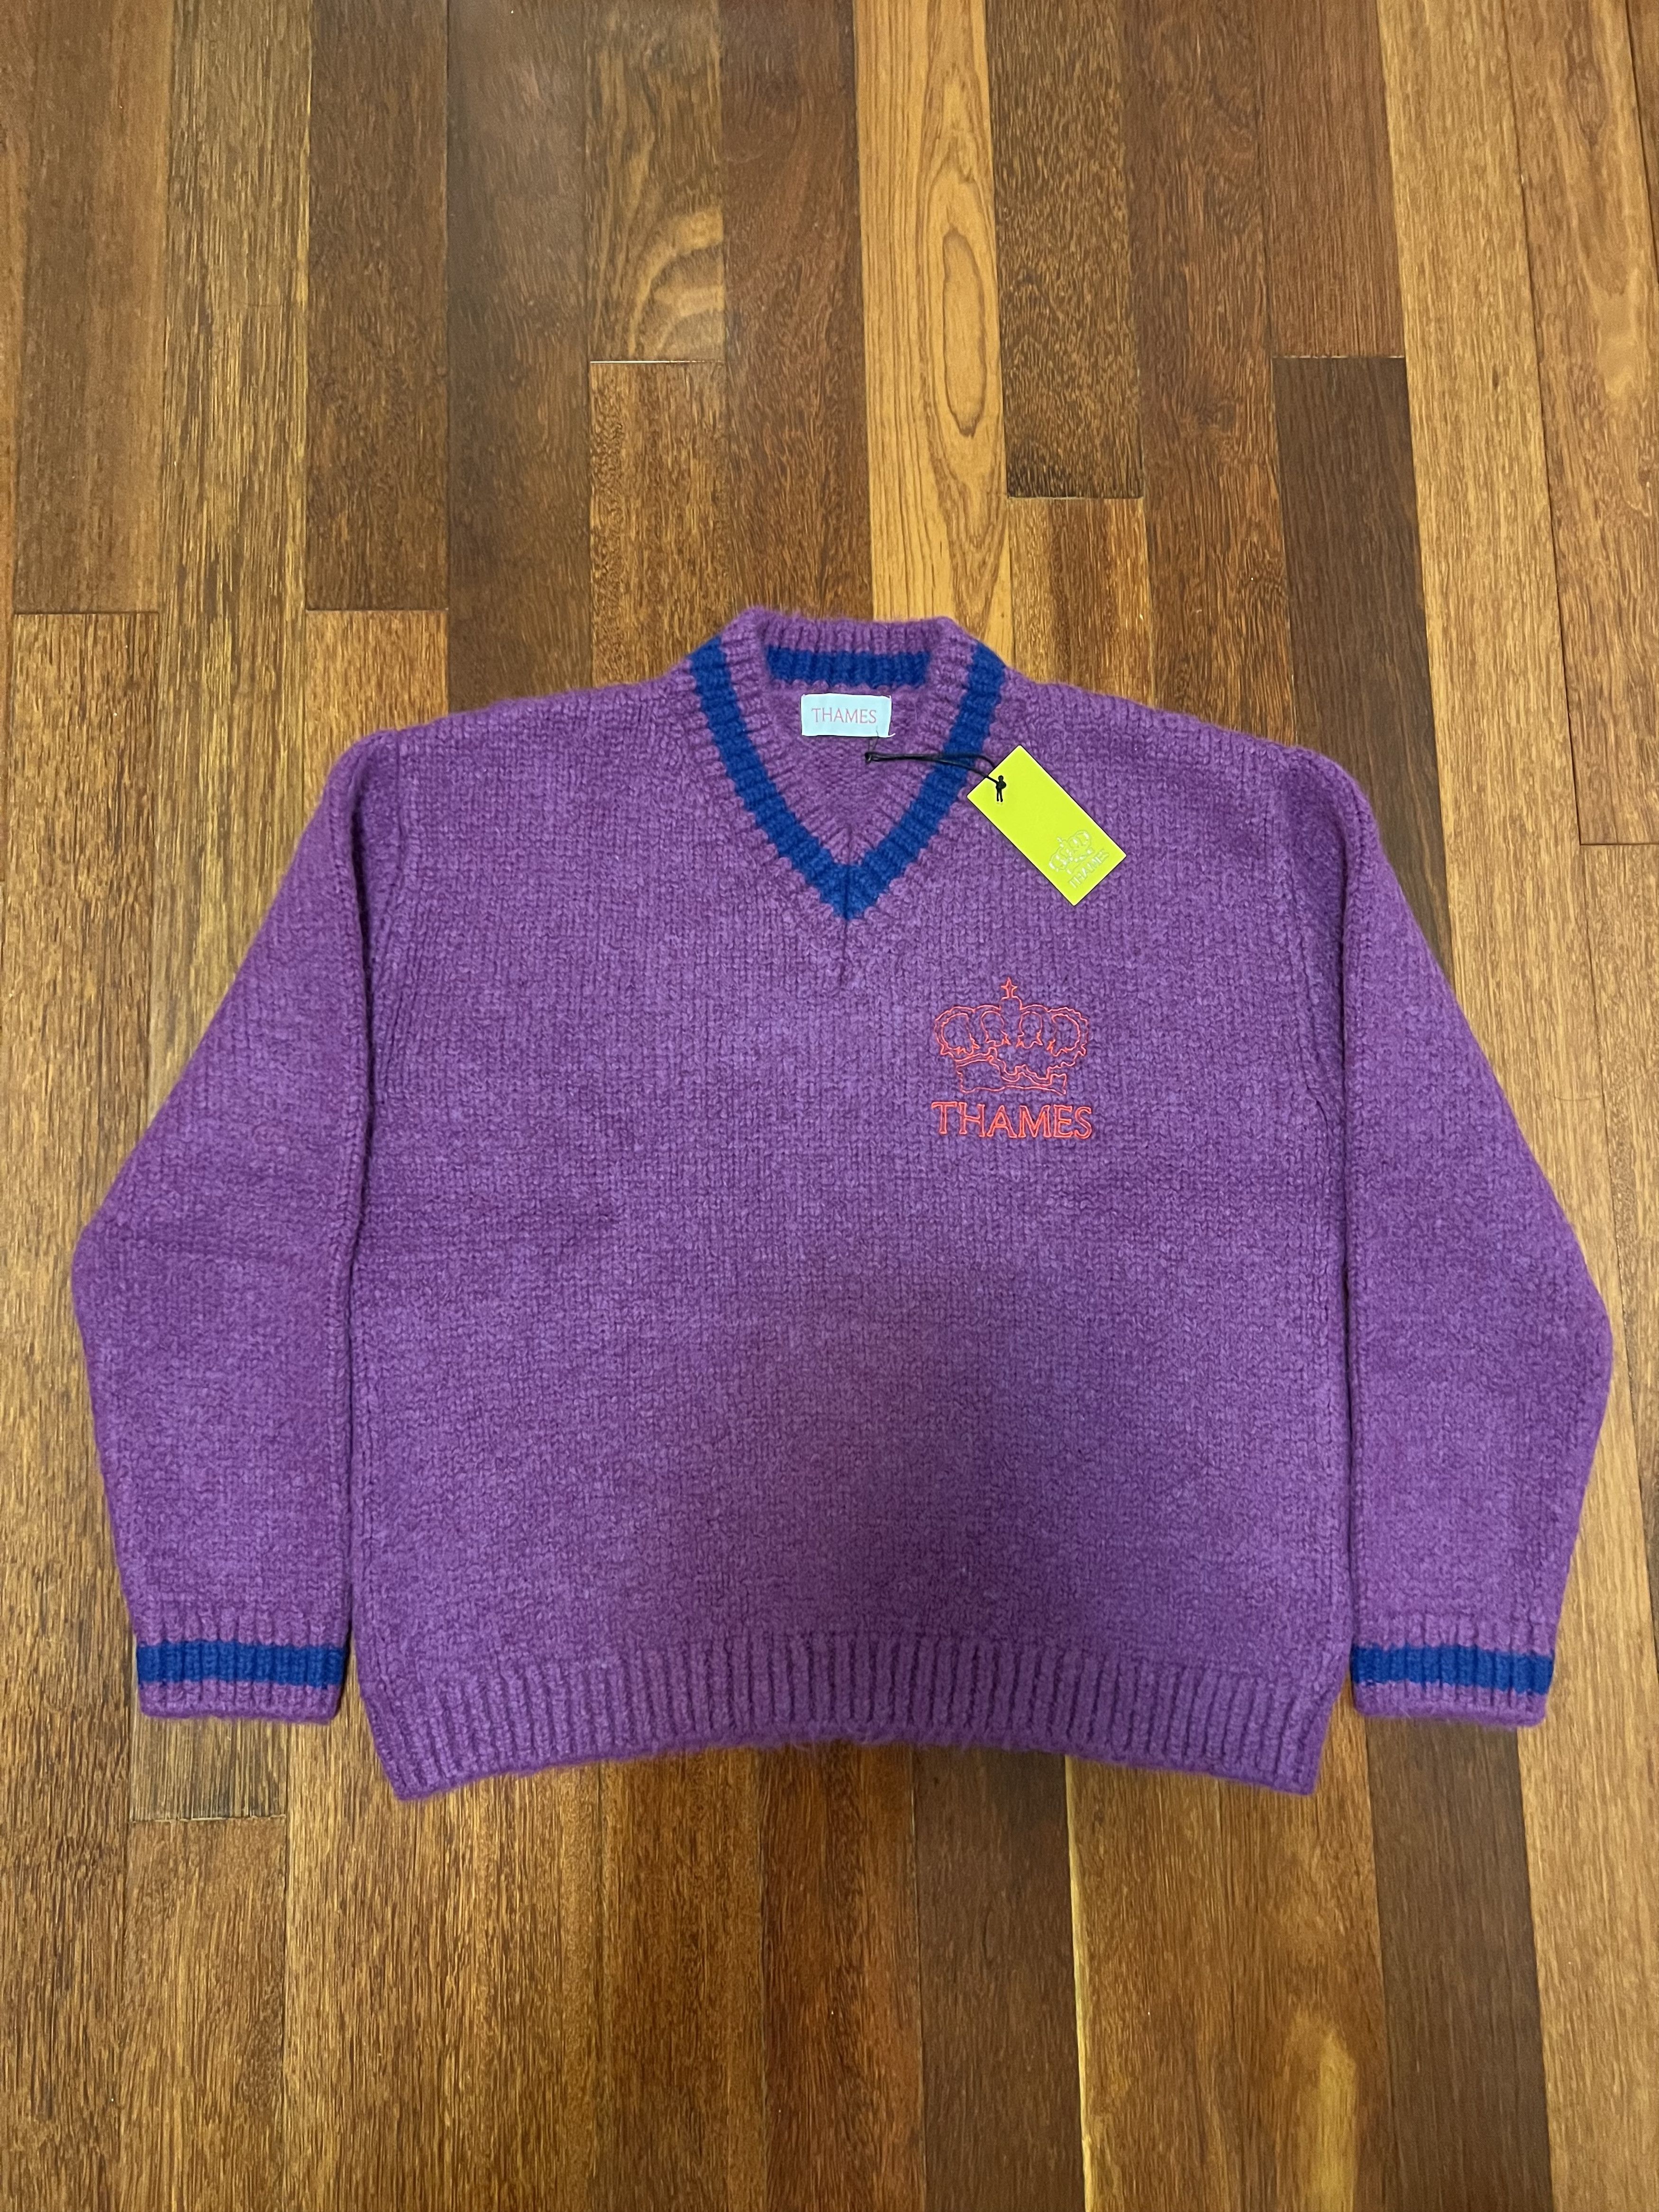 Men's Thames Sweaters & Knitwear | Grailed